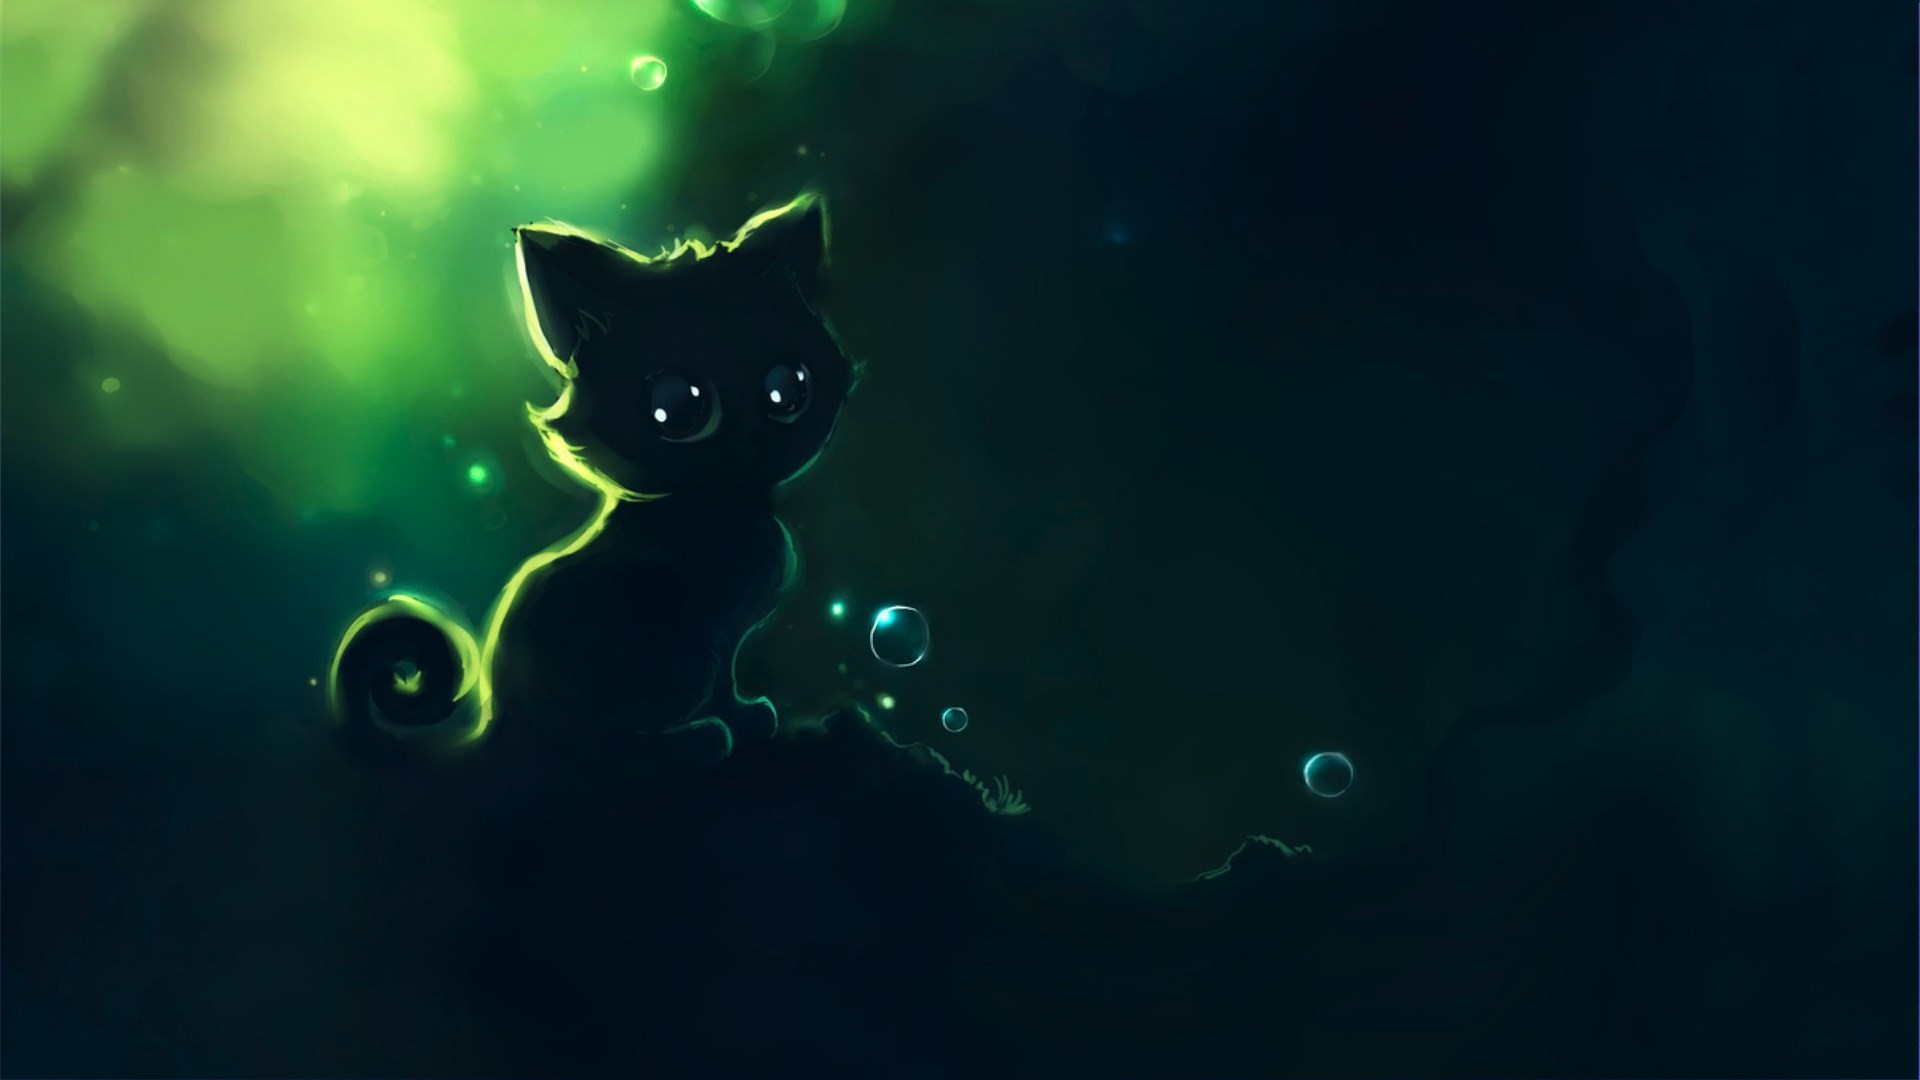 Image from night cat artwork 1. Artwork I like Pinterest Artwork